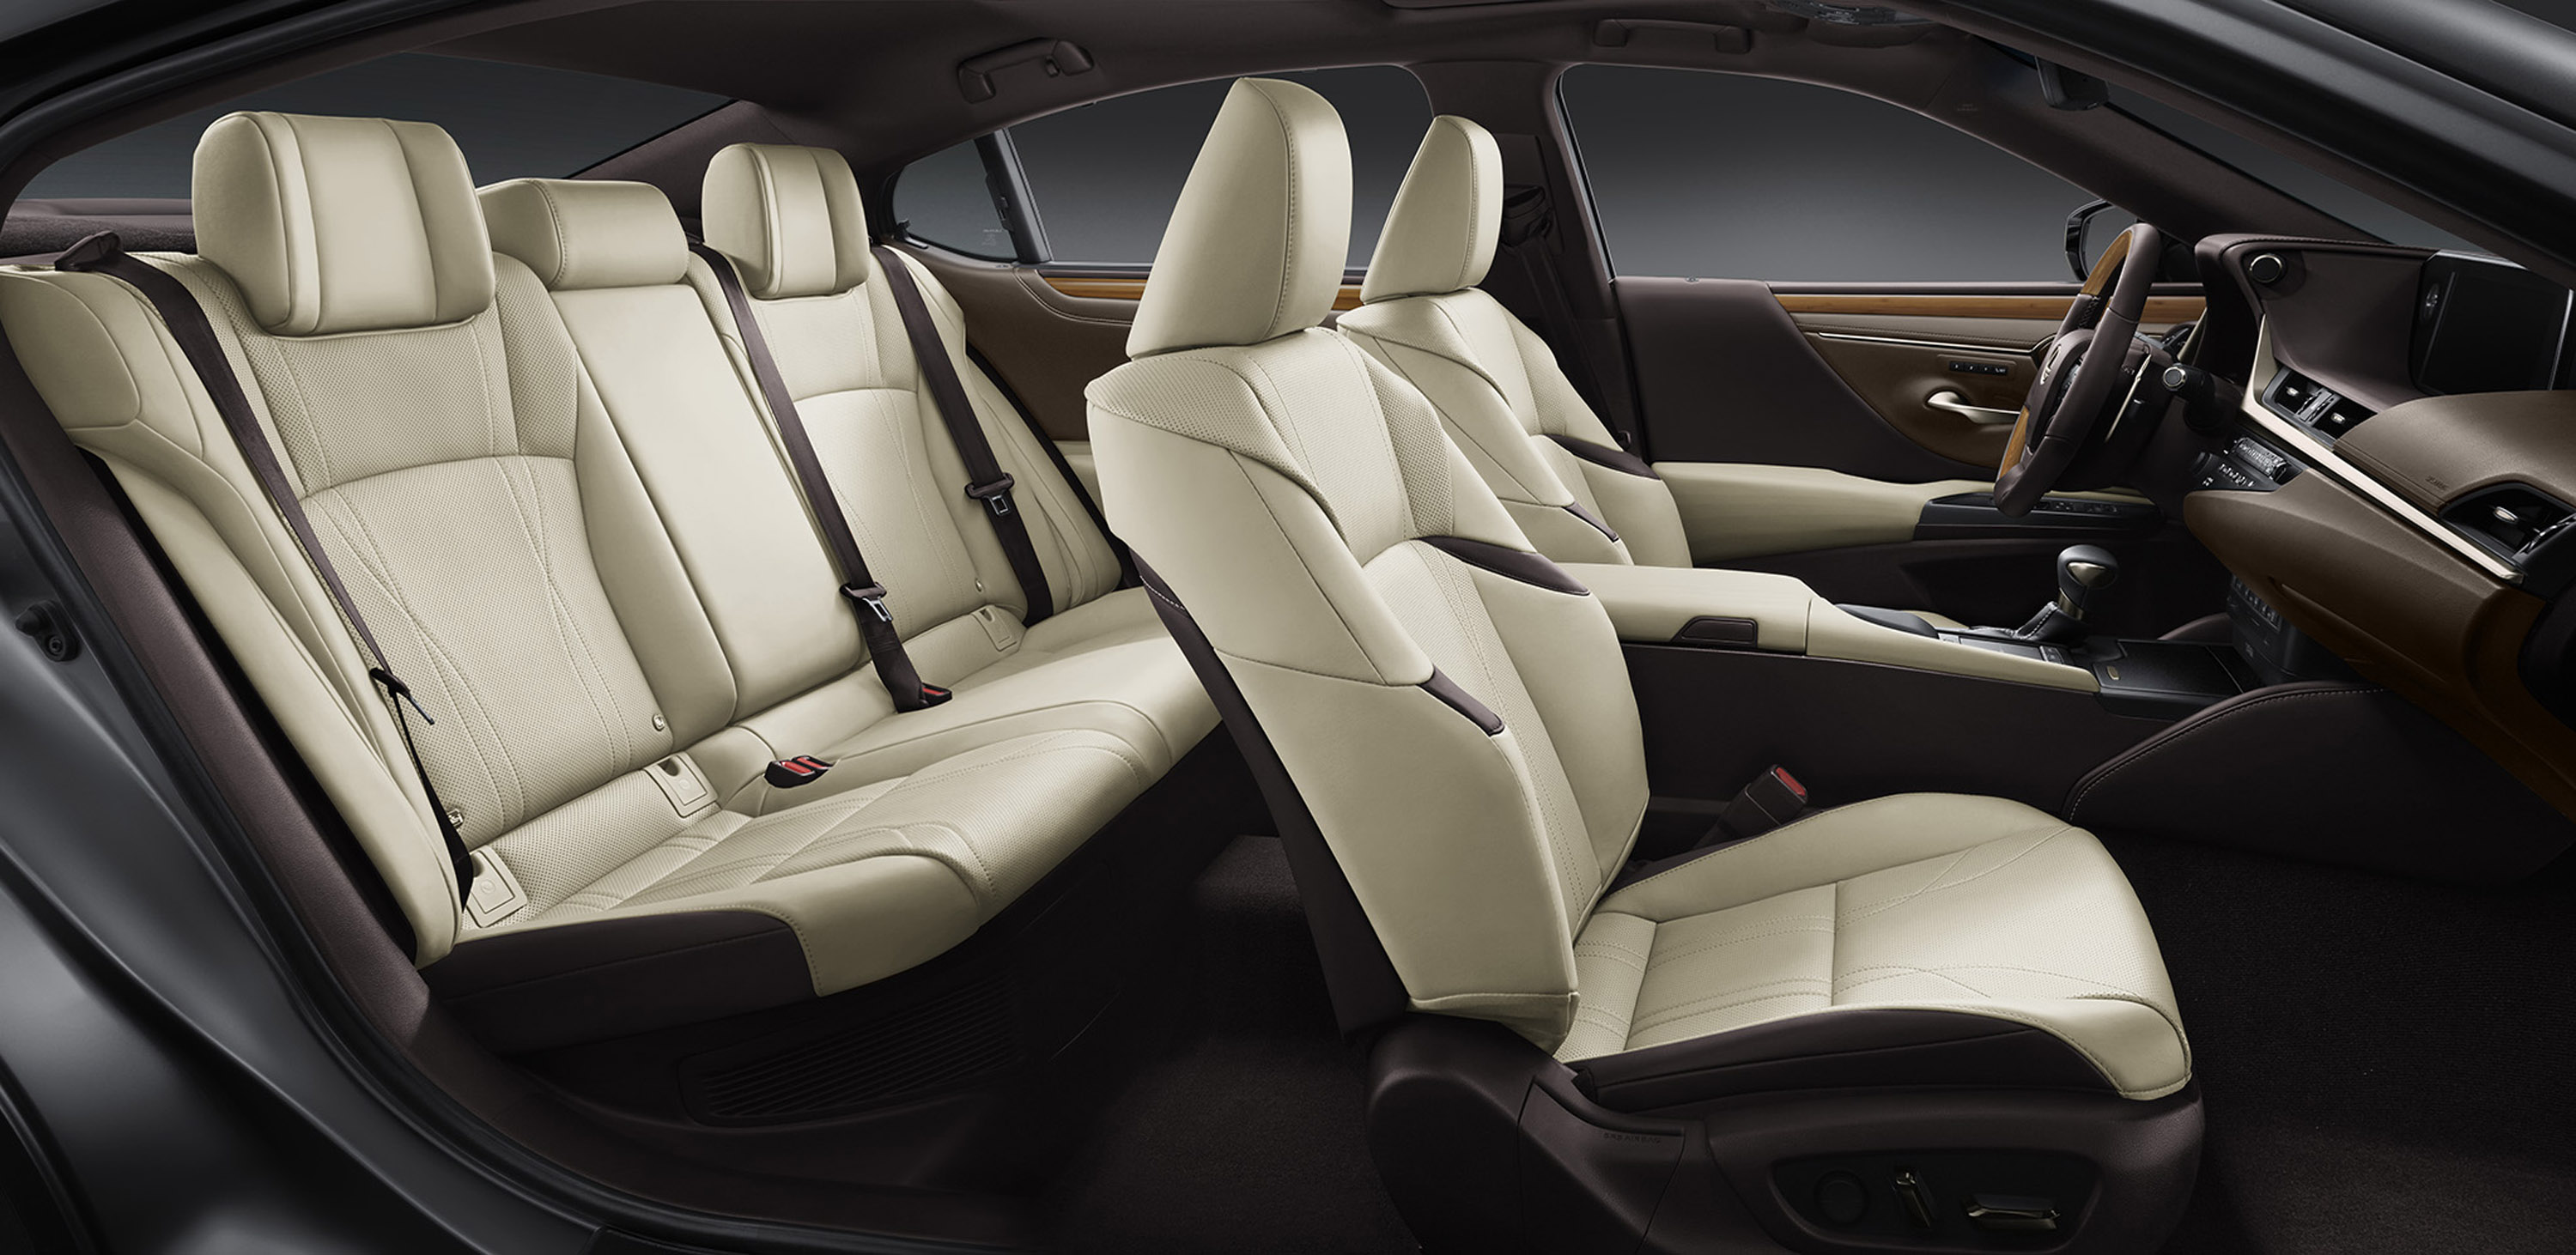 Lexus представляет роскошный автомобиль следующего поколения в лице среднеразмерного седана ES.